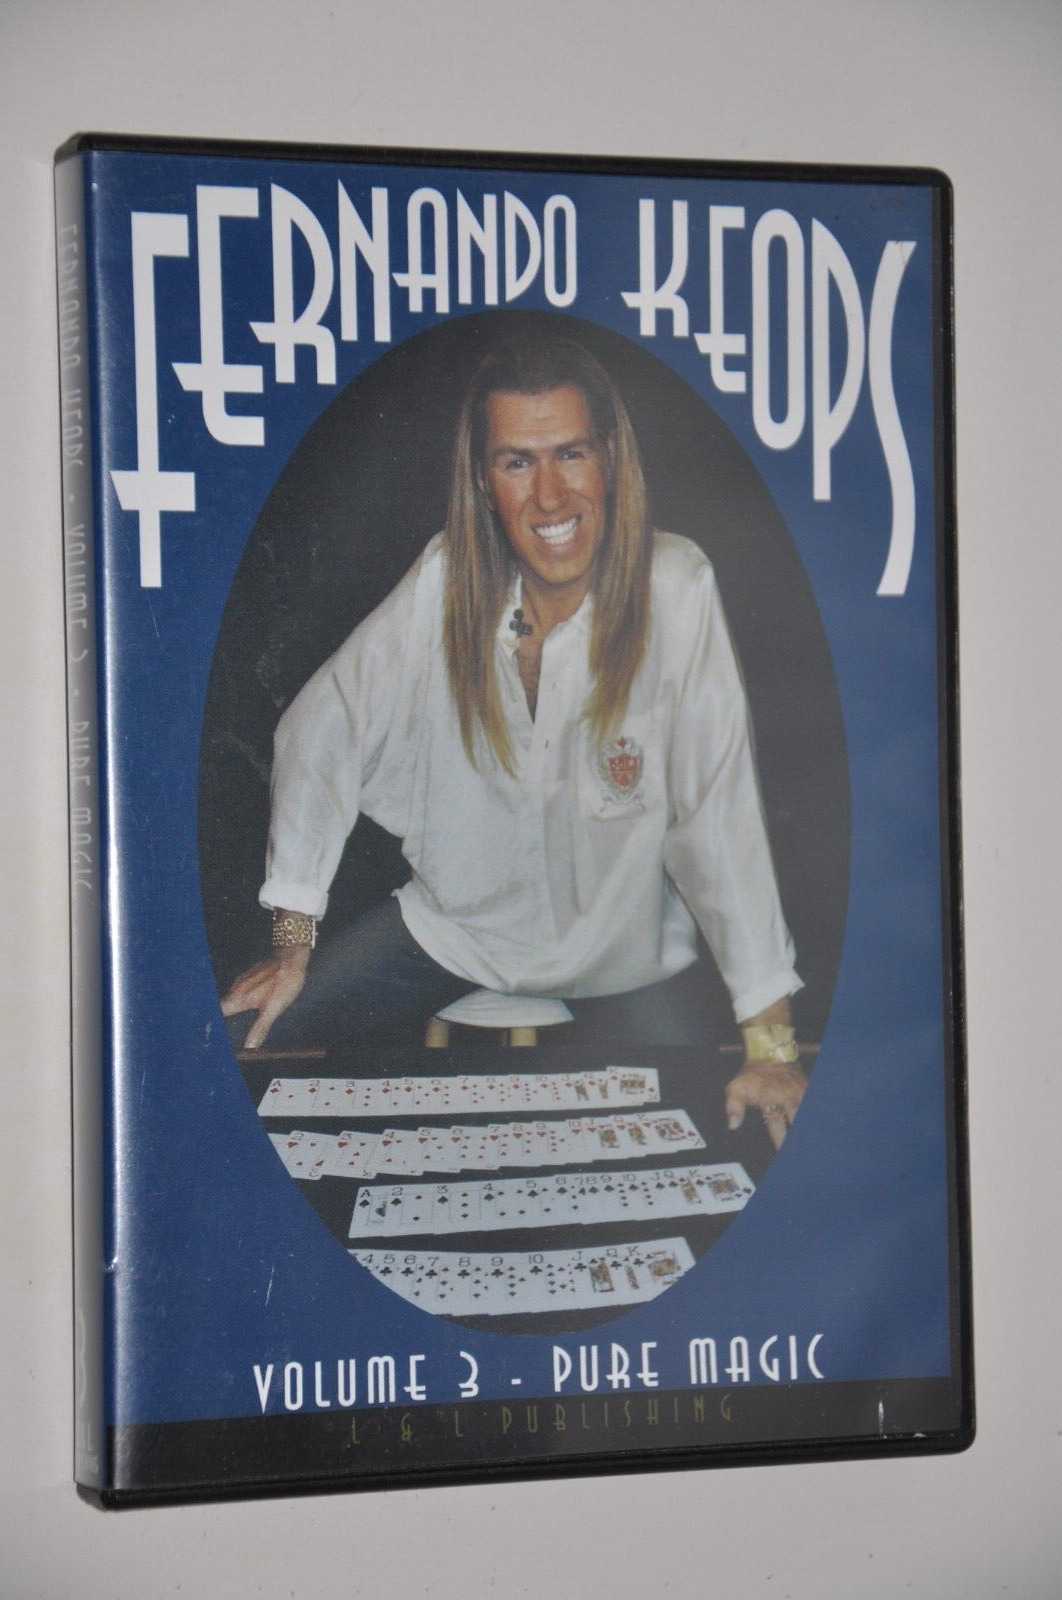 Fernando Keops Volume 3 Pure Magic - Card Magic DVD L & L Video